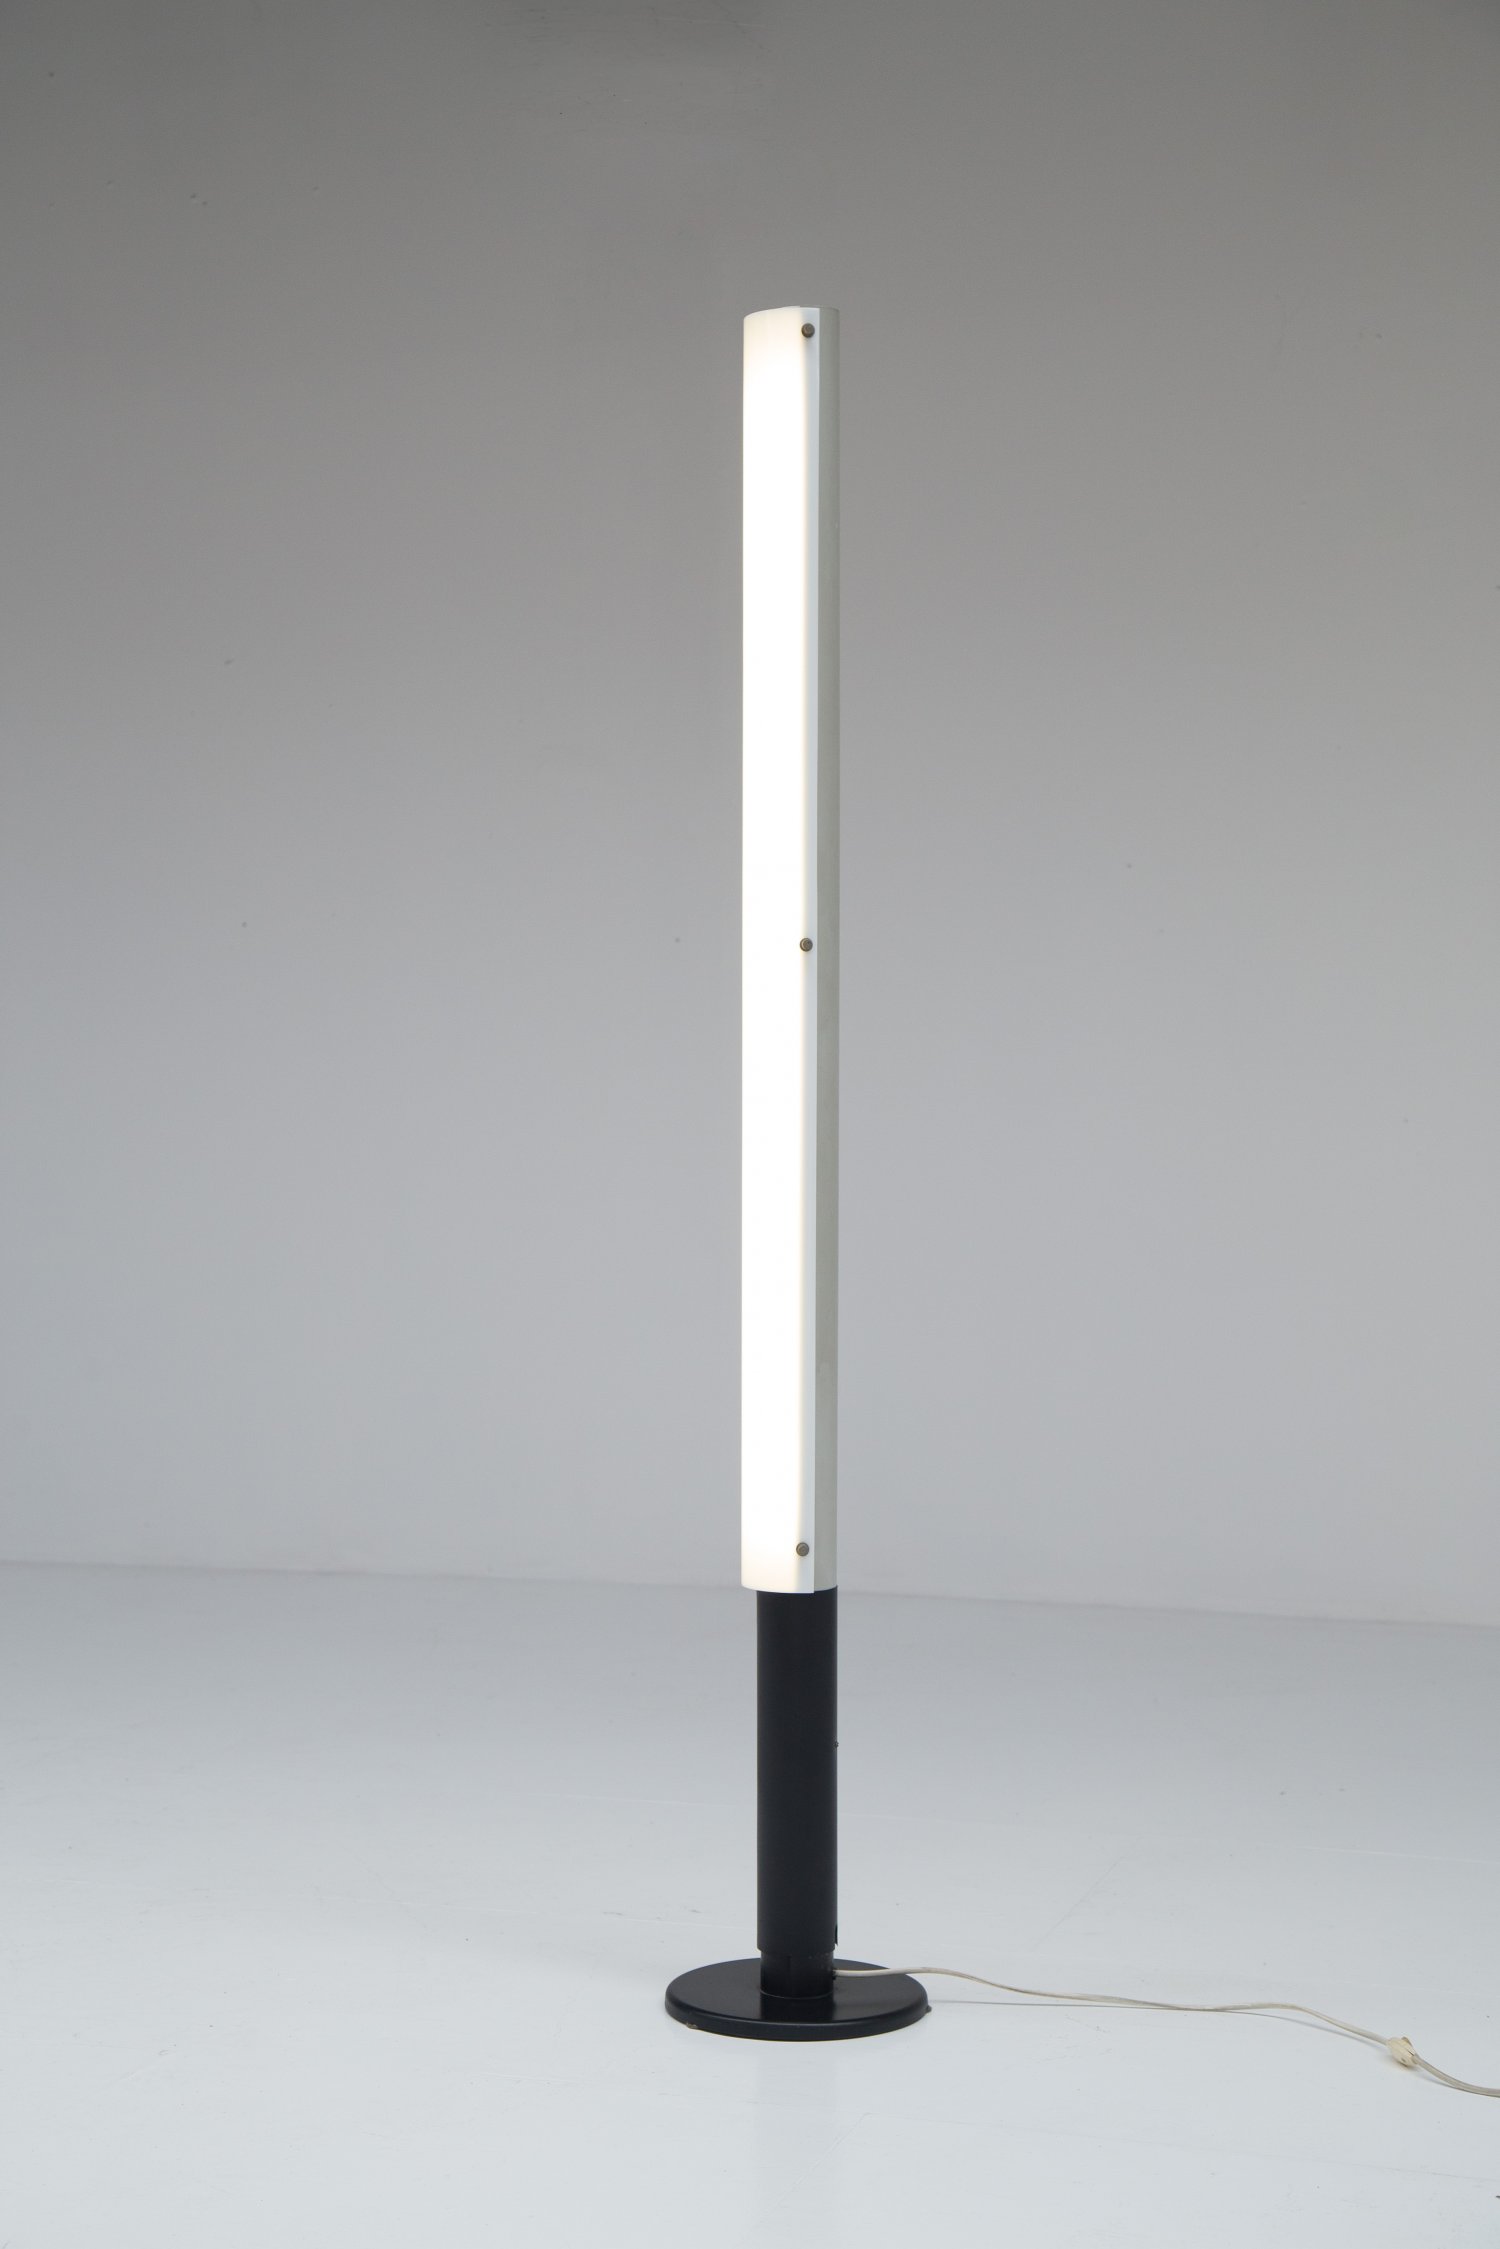 Johan Niegeman lamp for Artiforte, 1957